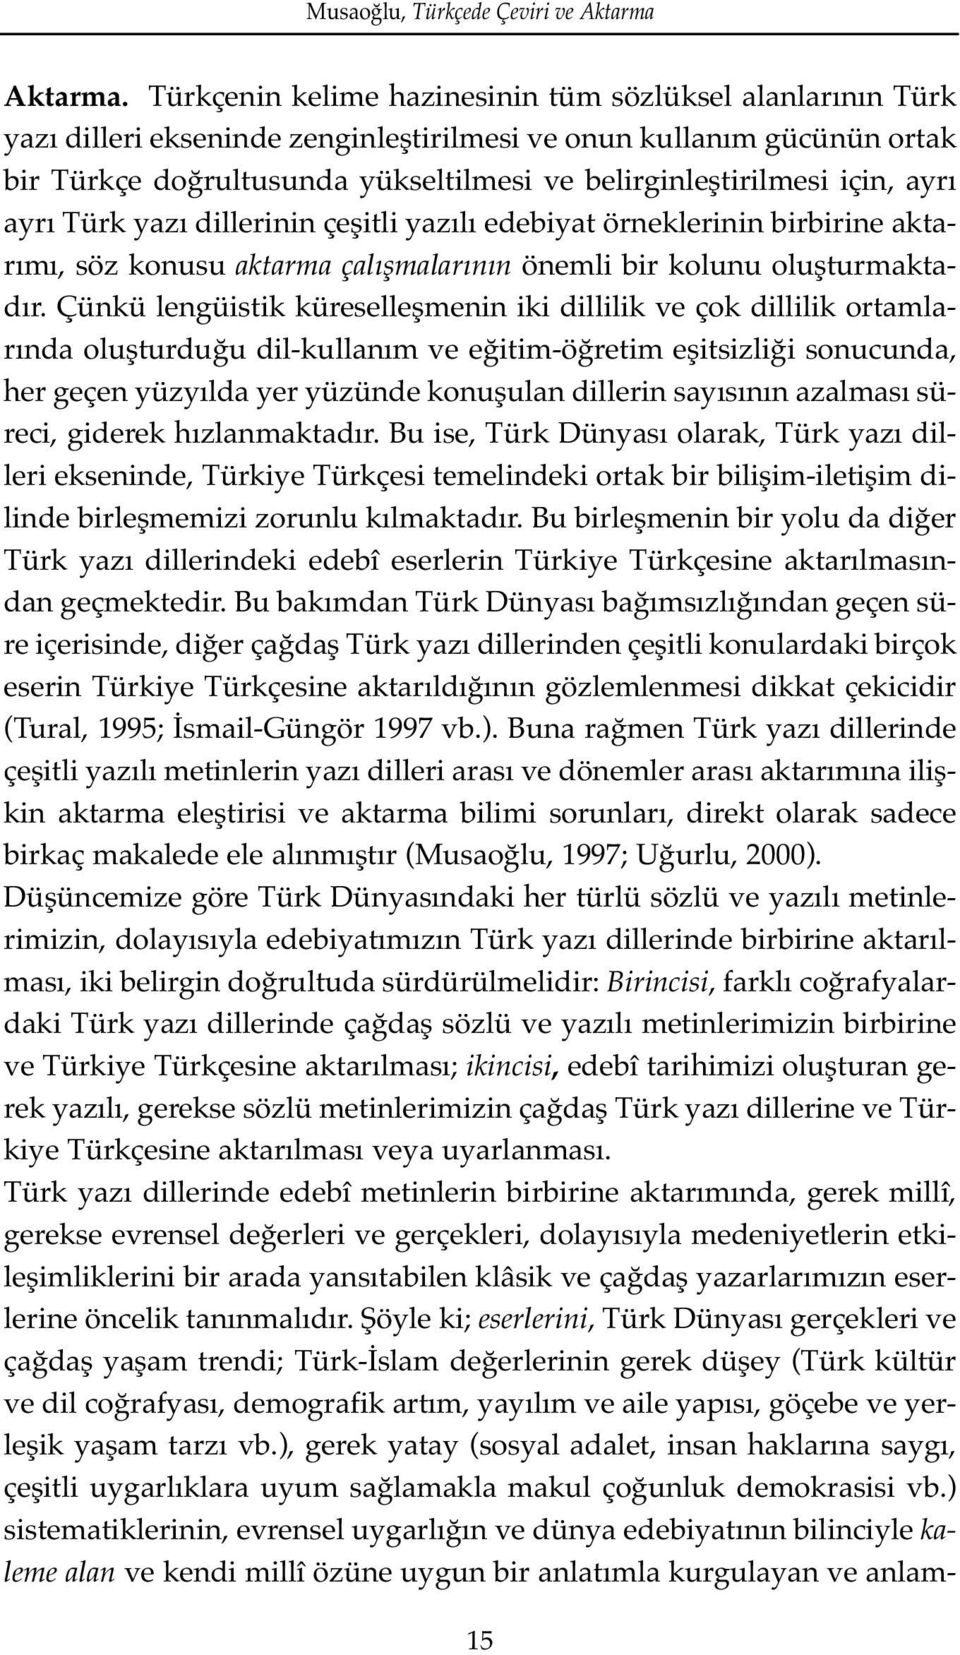 için, ayrı ayrı Türk yazı dillerinin çeşitli yazılı edebiyat örneklerinin birbirine aktarımı, söz konusu aktarma çal flmalar n n önemli bir kolunu oluşturmaktadır.